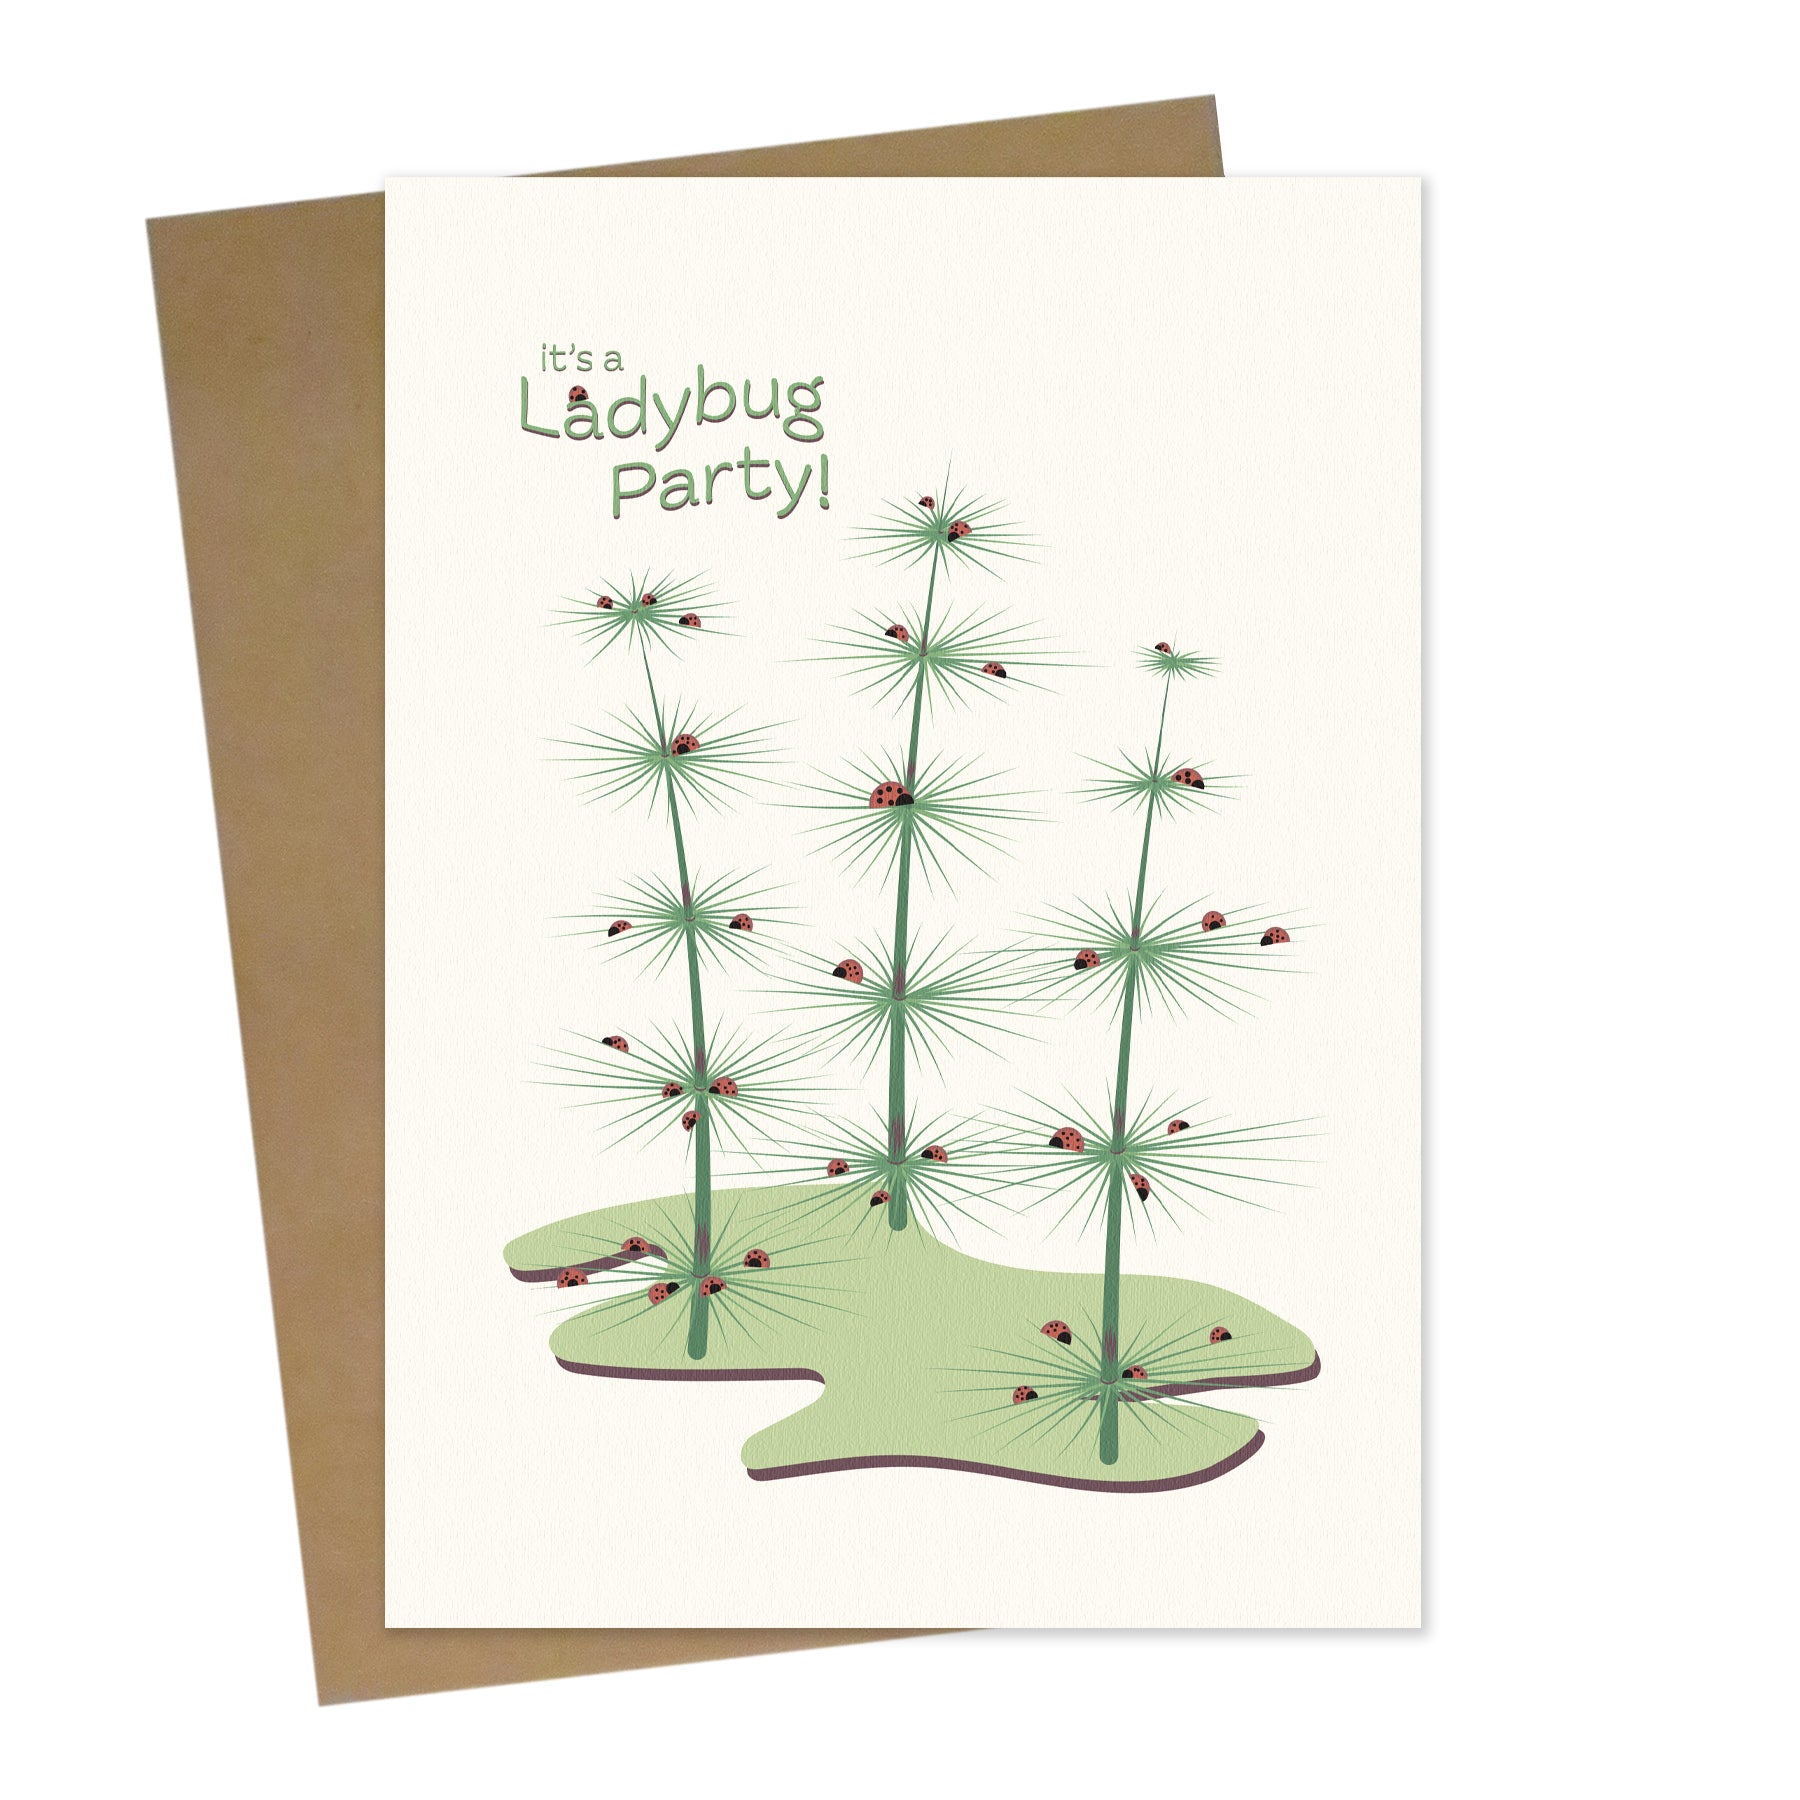 Mockup for greeting card digital design showing 3 fern plants hosting a ladybug party 